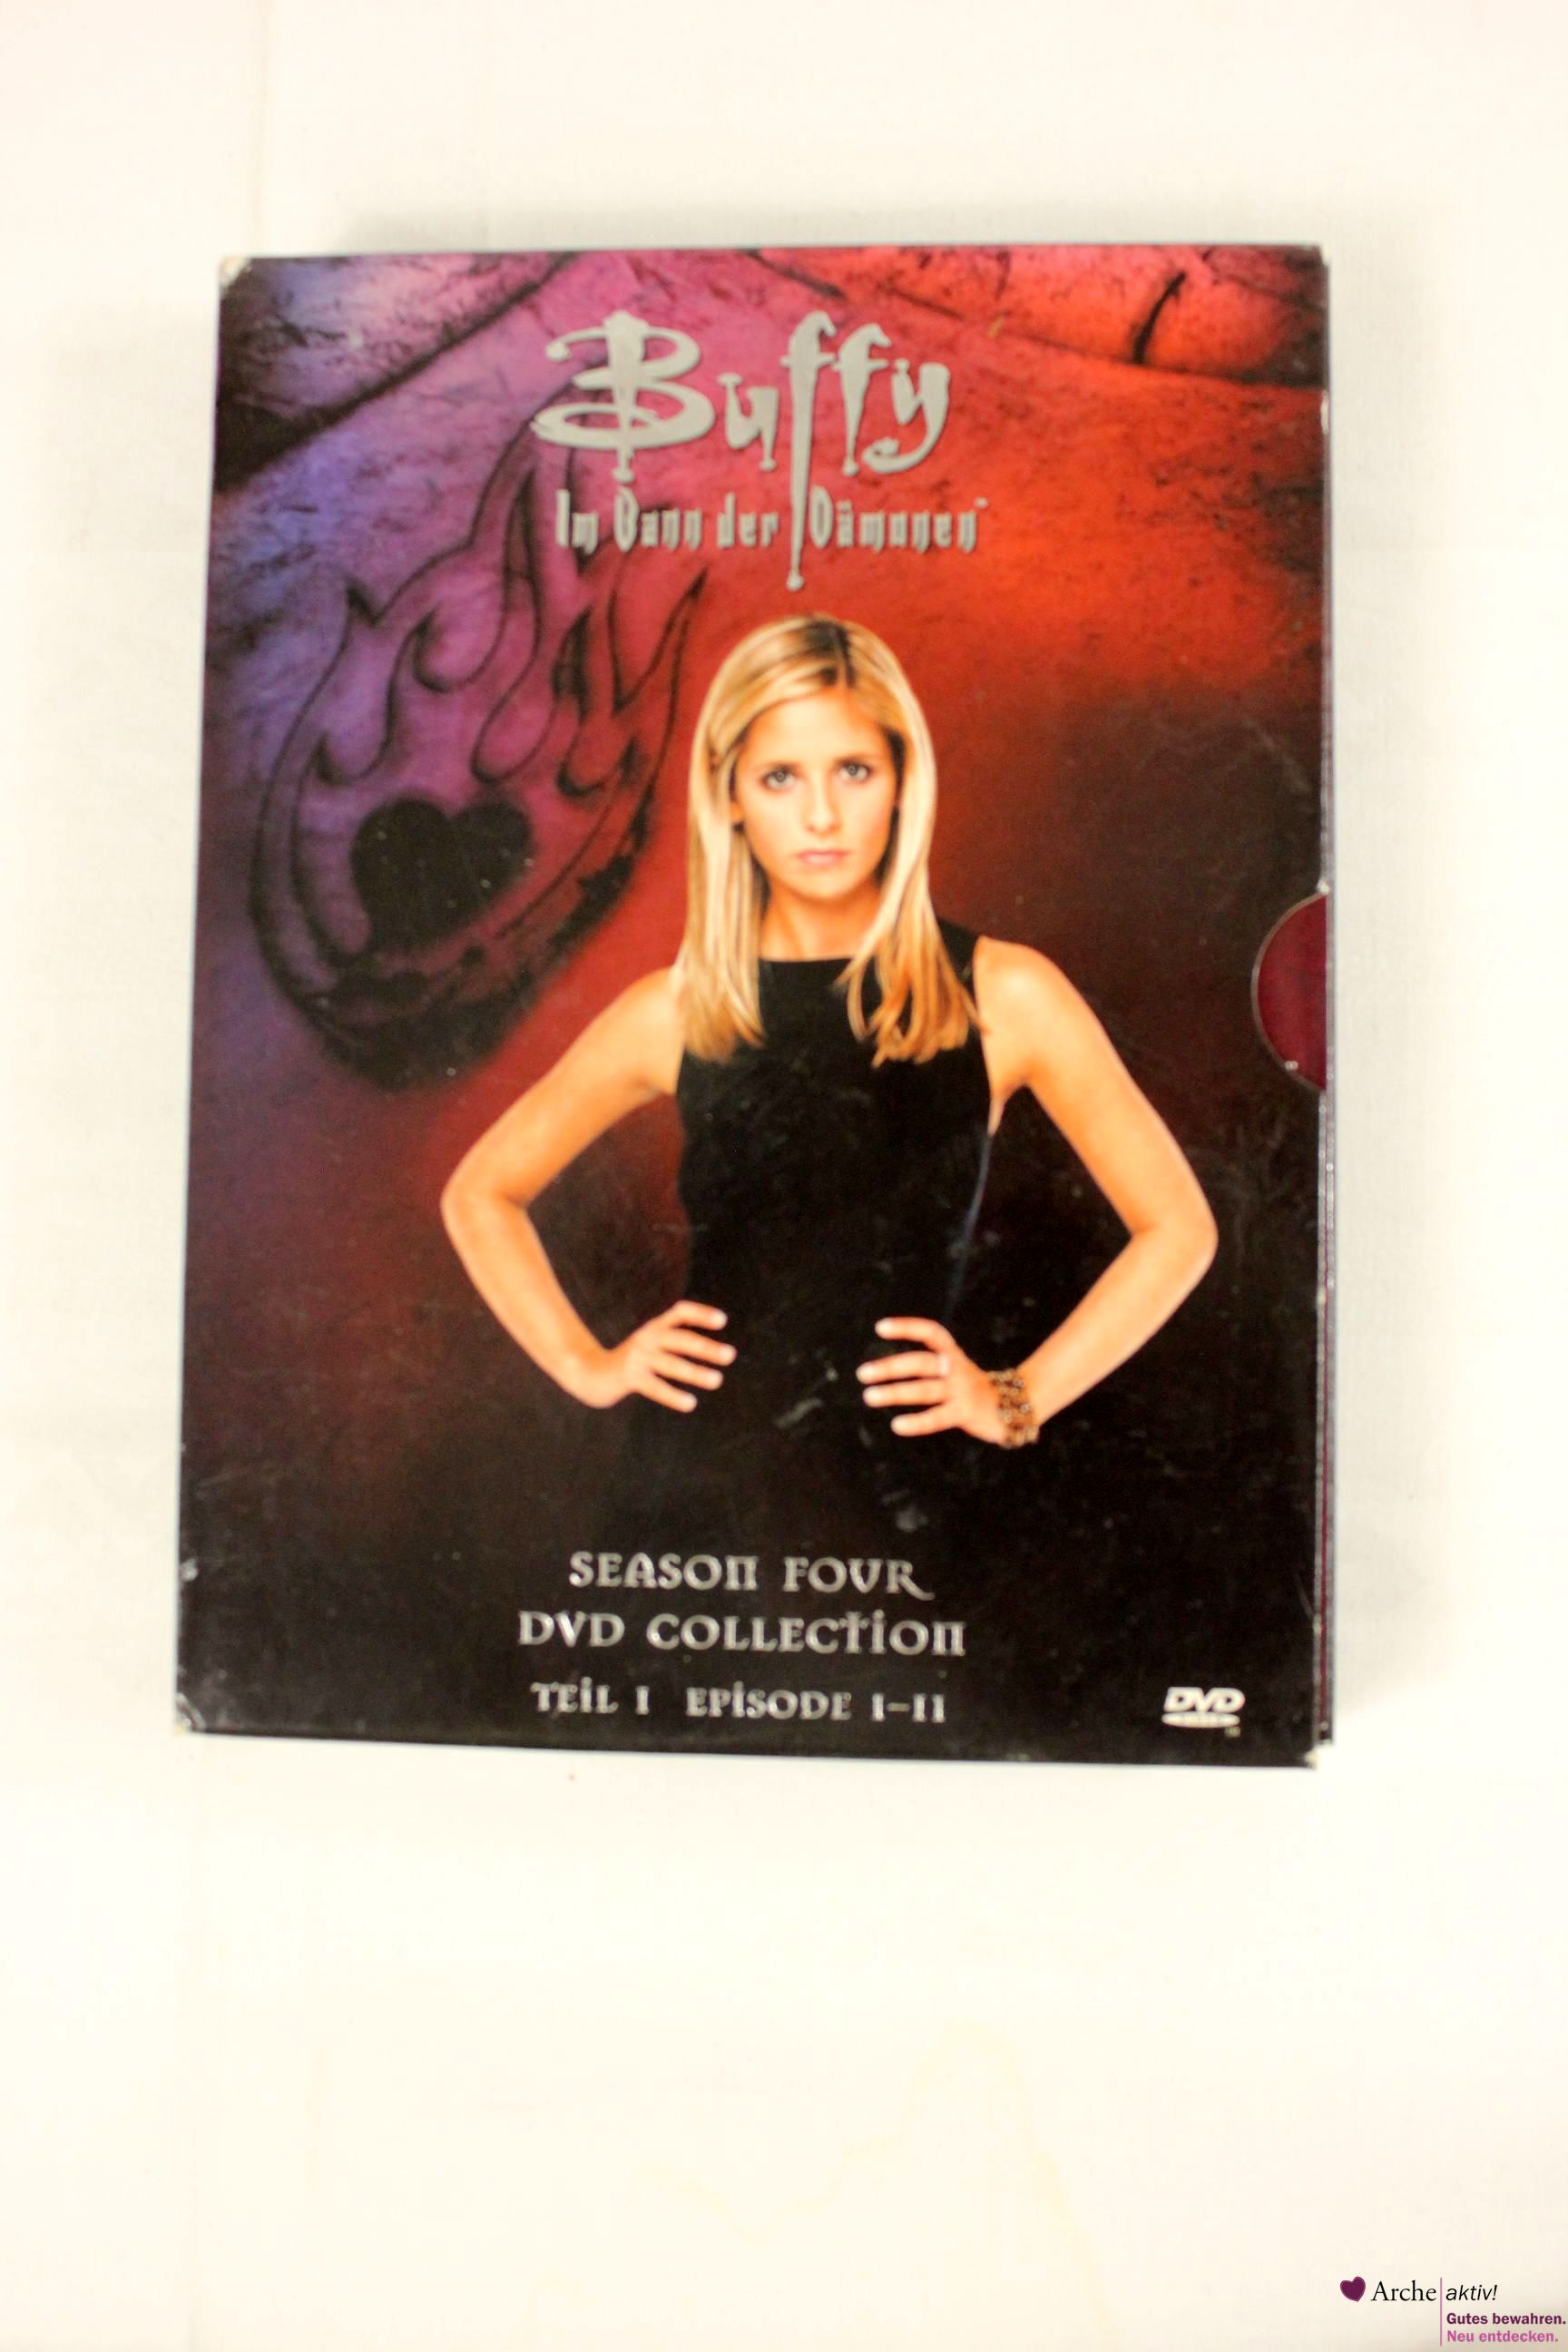 Buffy im Bann der Dämonen Season 4 - Teil1 - Episode 1-11, auf DVD, gebr.